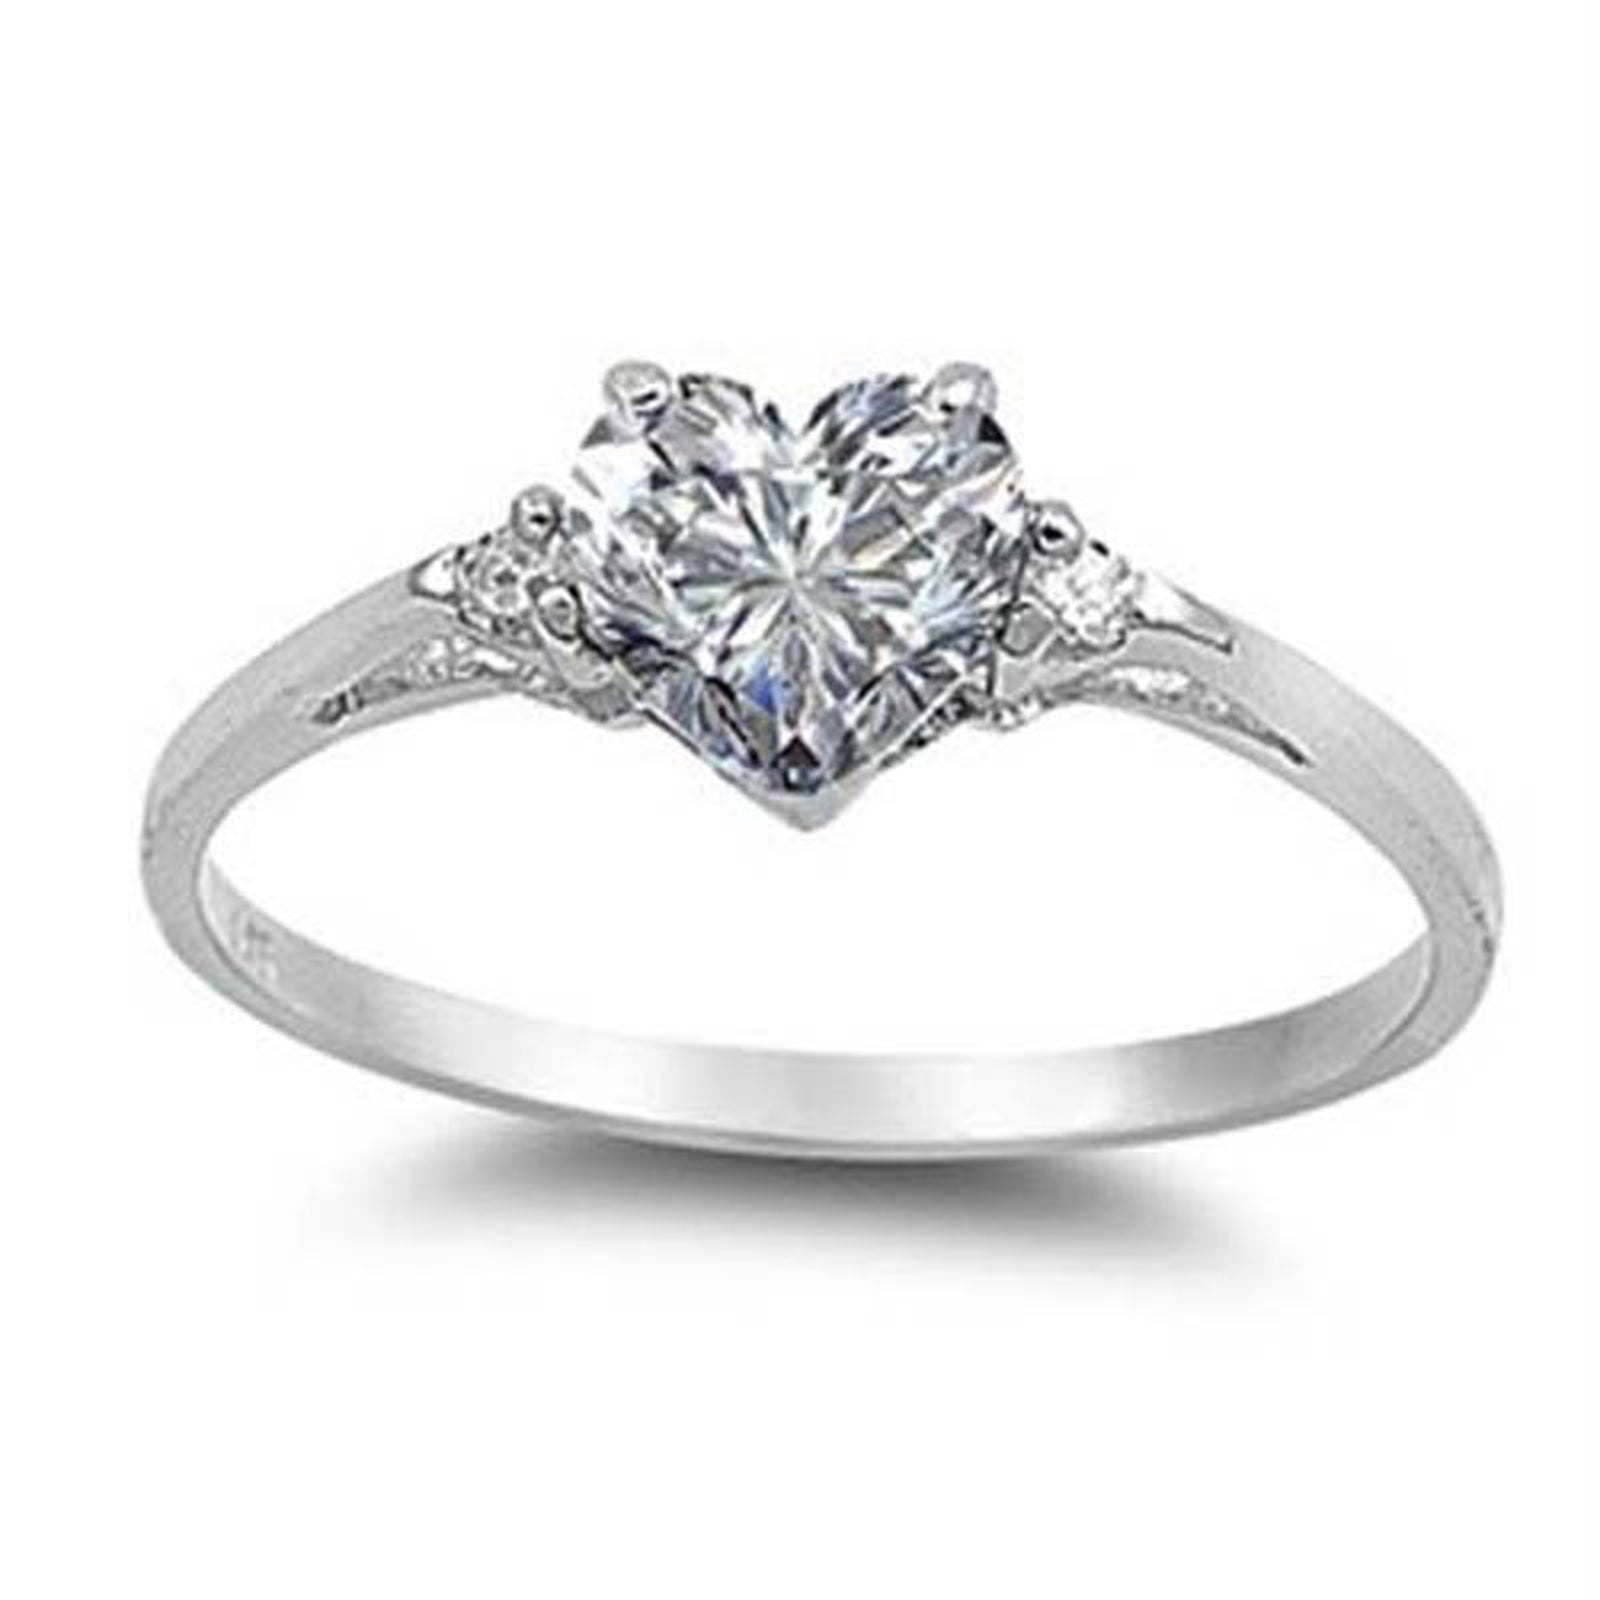 Princess Cut Engagement Rings in Engagement Rings - Walmart.com